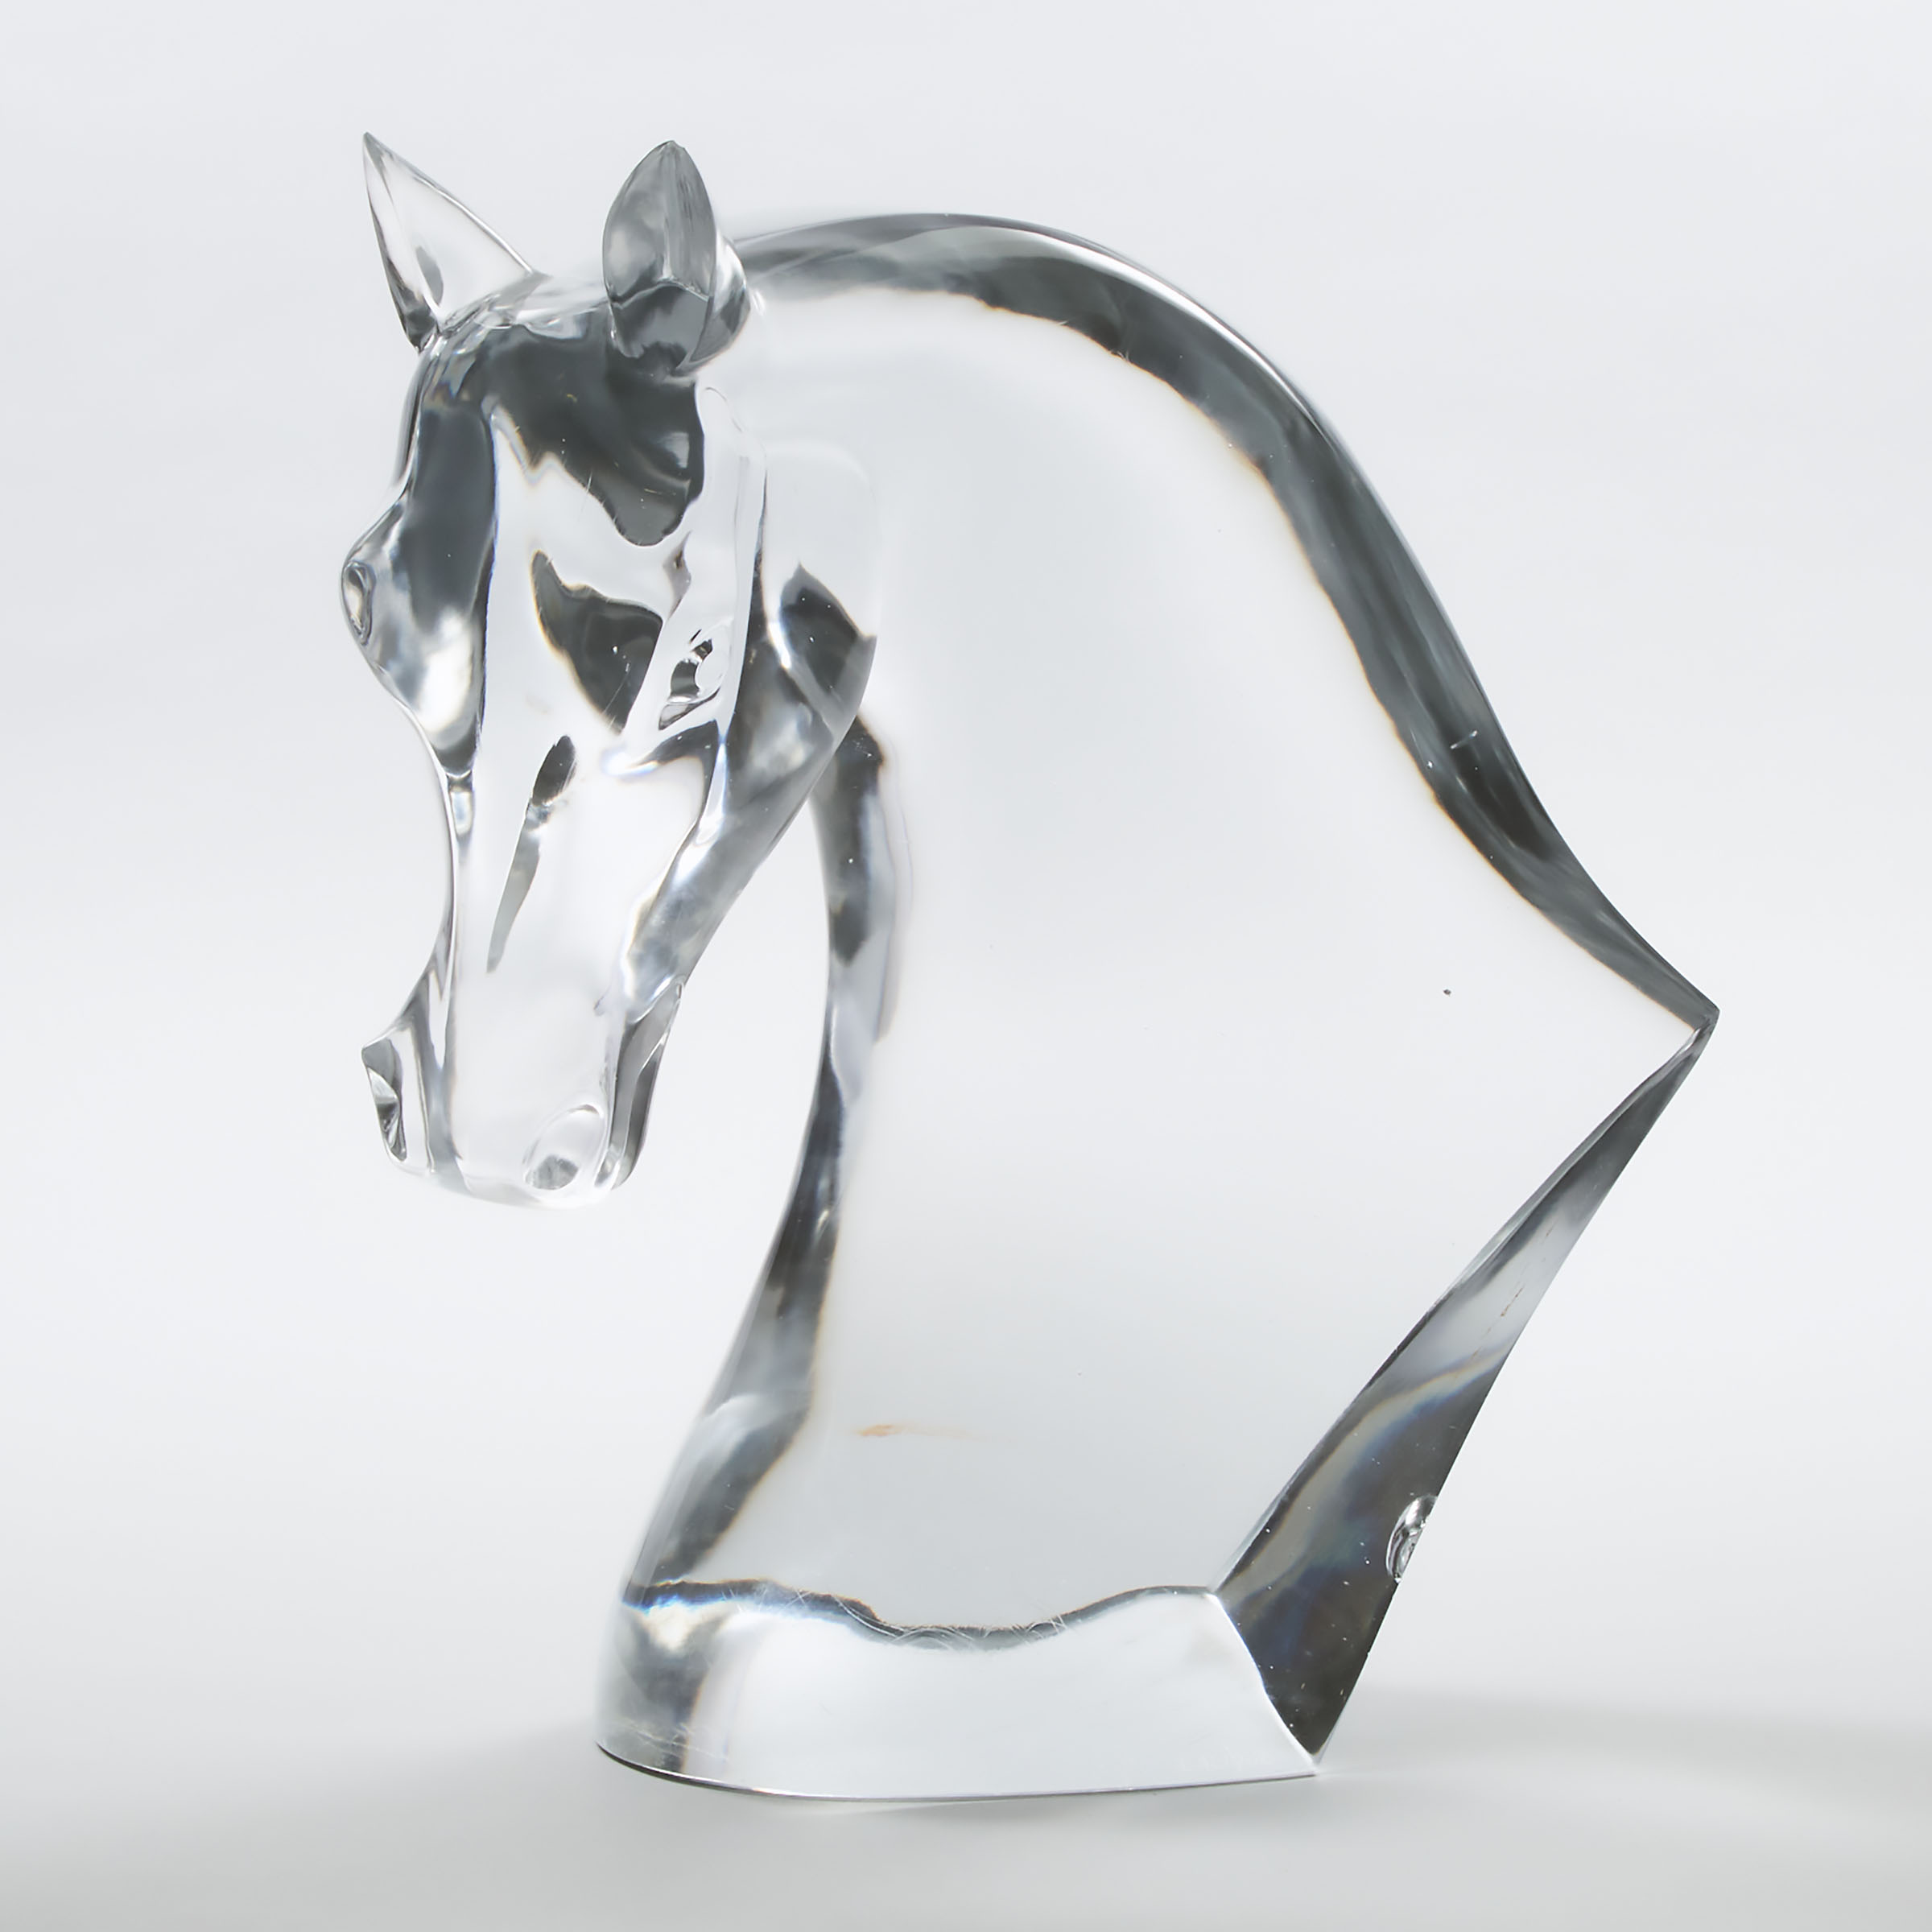 'Tête de Cheval', Lalique Glass Large Model of a Horse's Head, post-1953